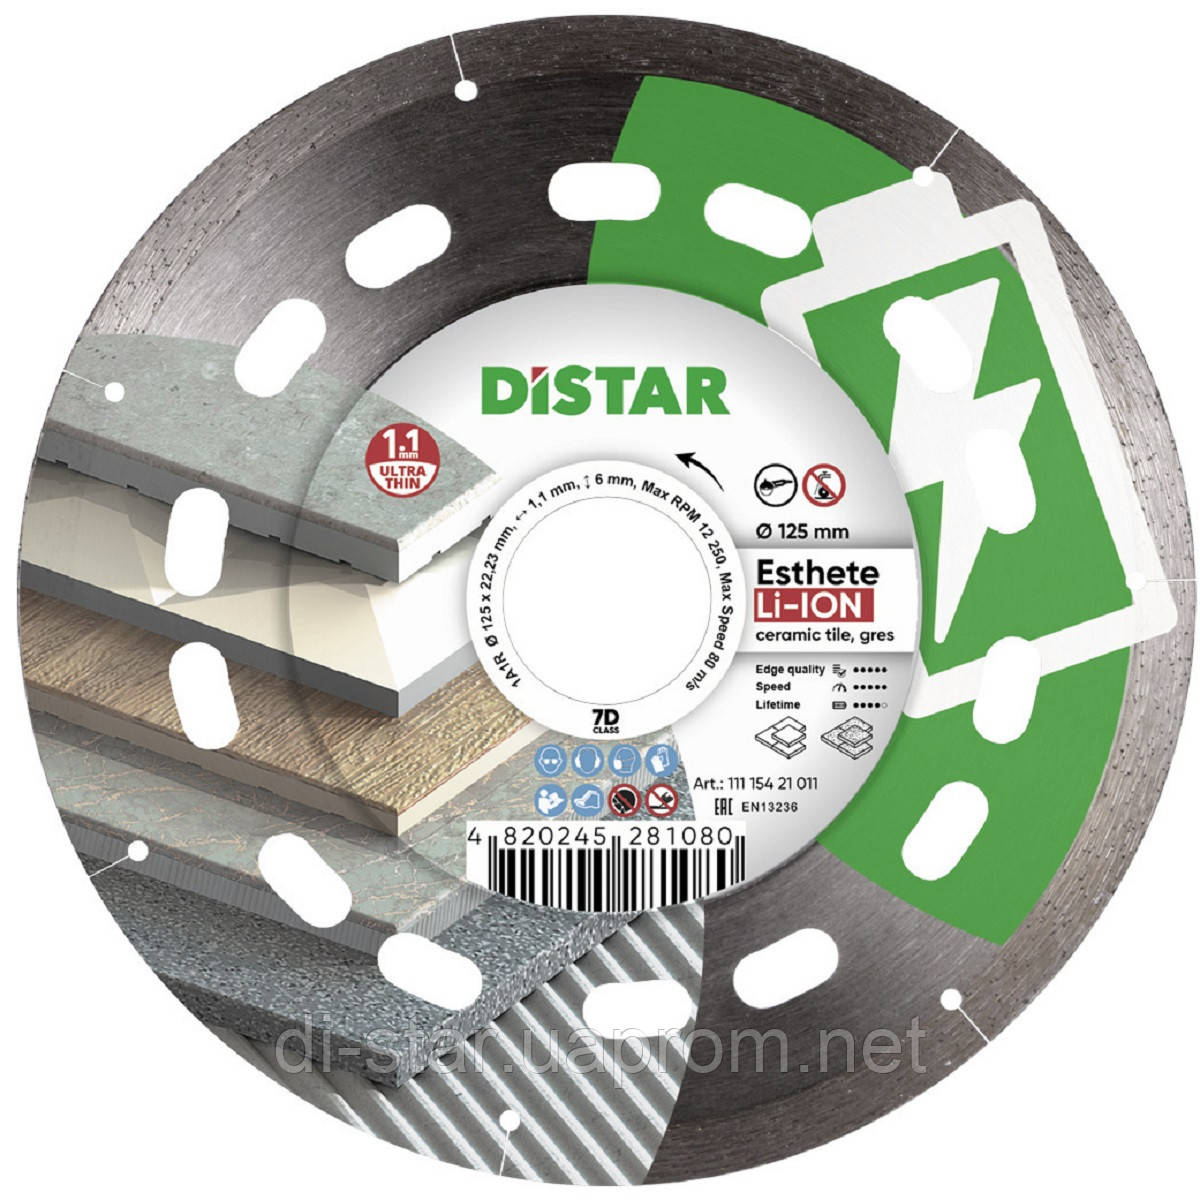 Круг алмазний Esthete LI-ION 125мм Distar 1A1R відрізний диск для акумуляторних УШМ 11115421011